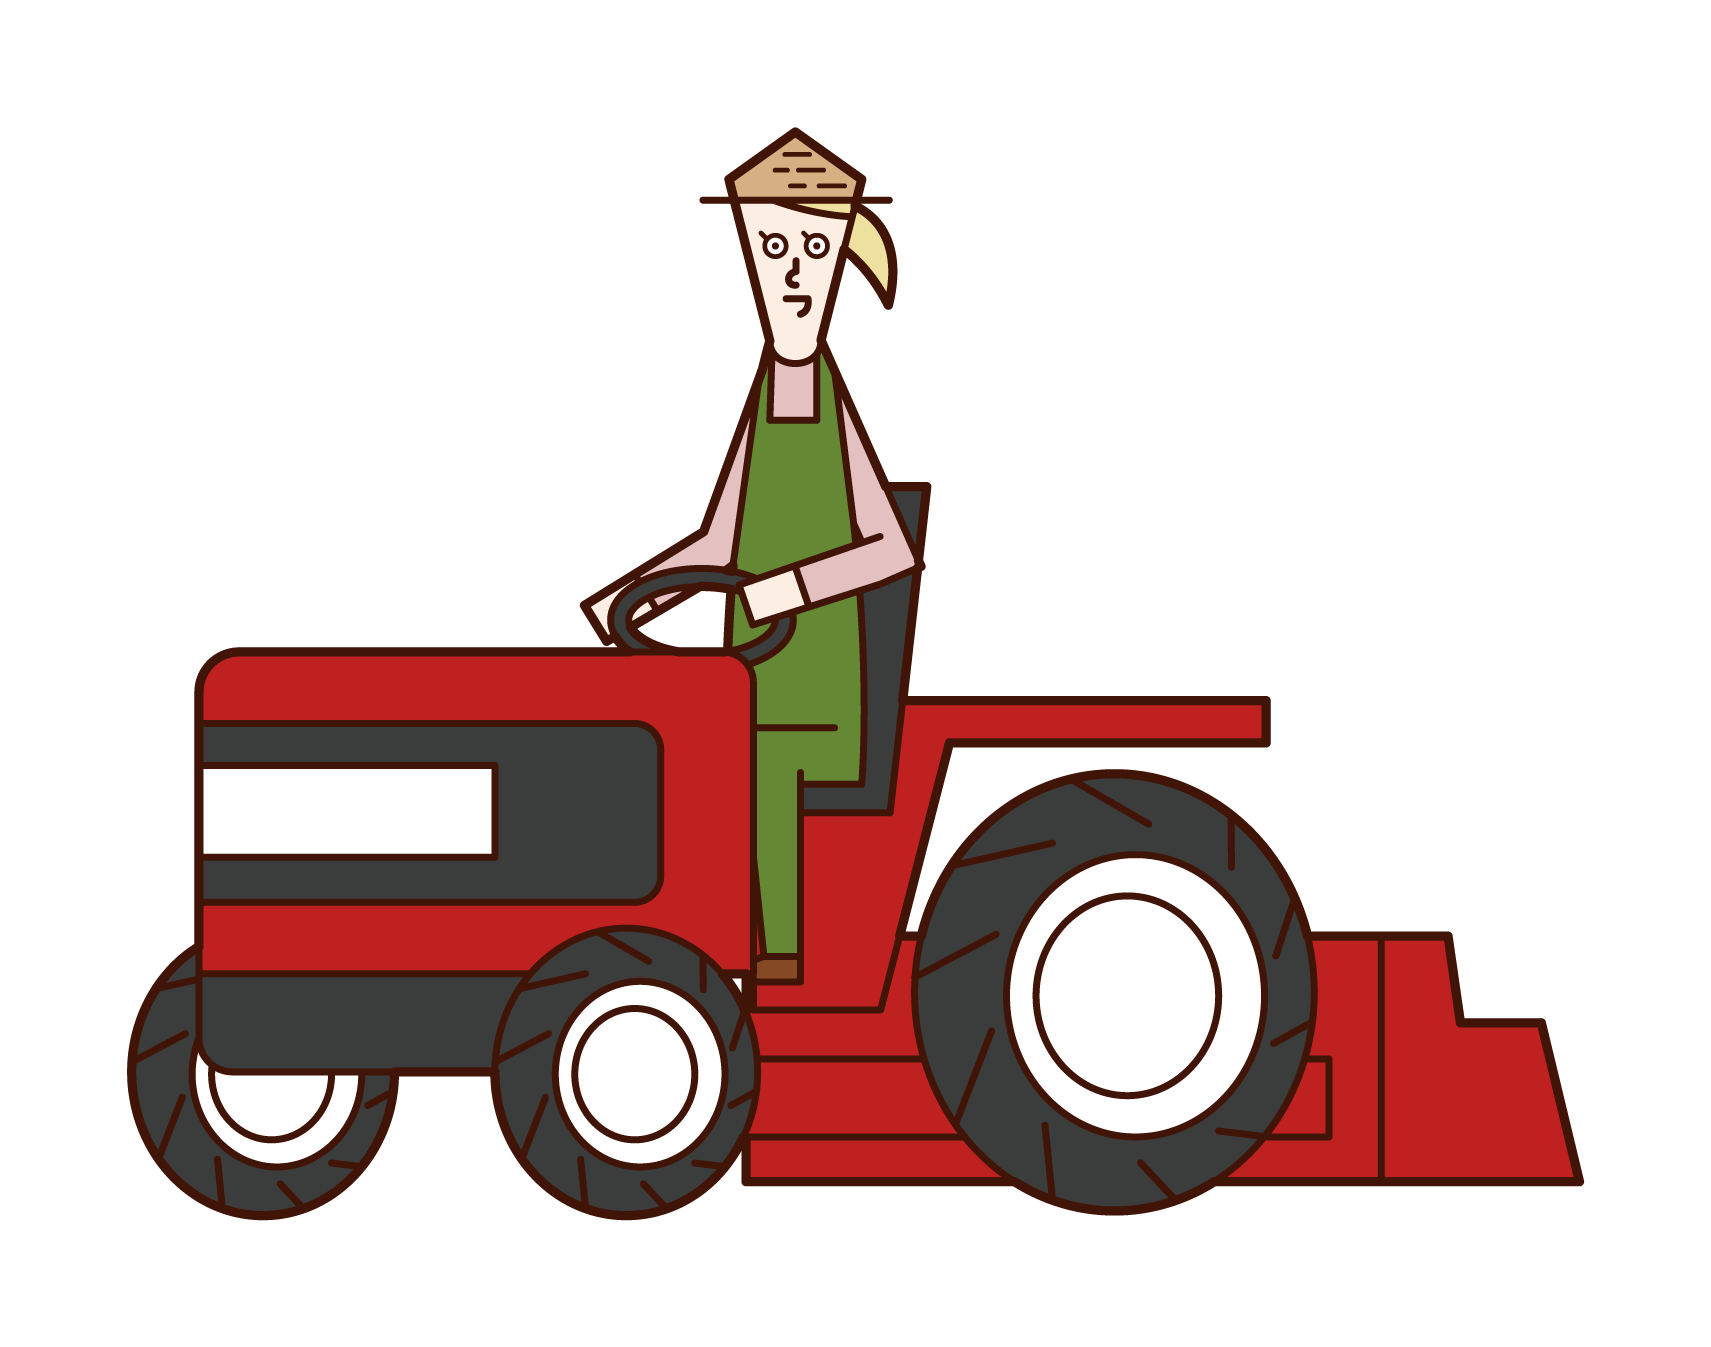 트랙터를 운전하는 사람 (여성)의 그림